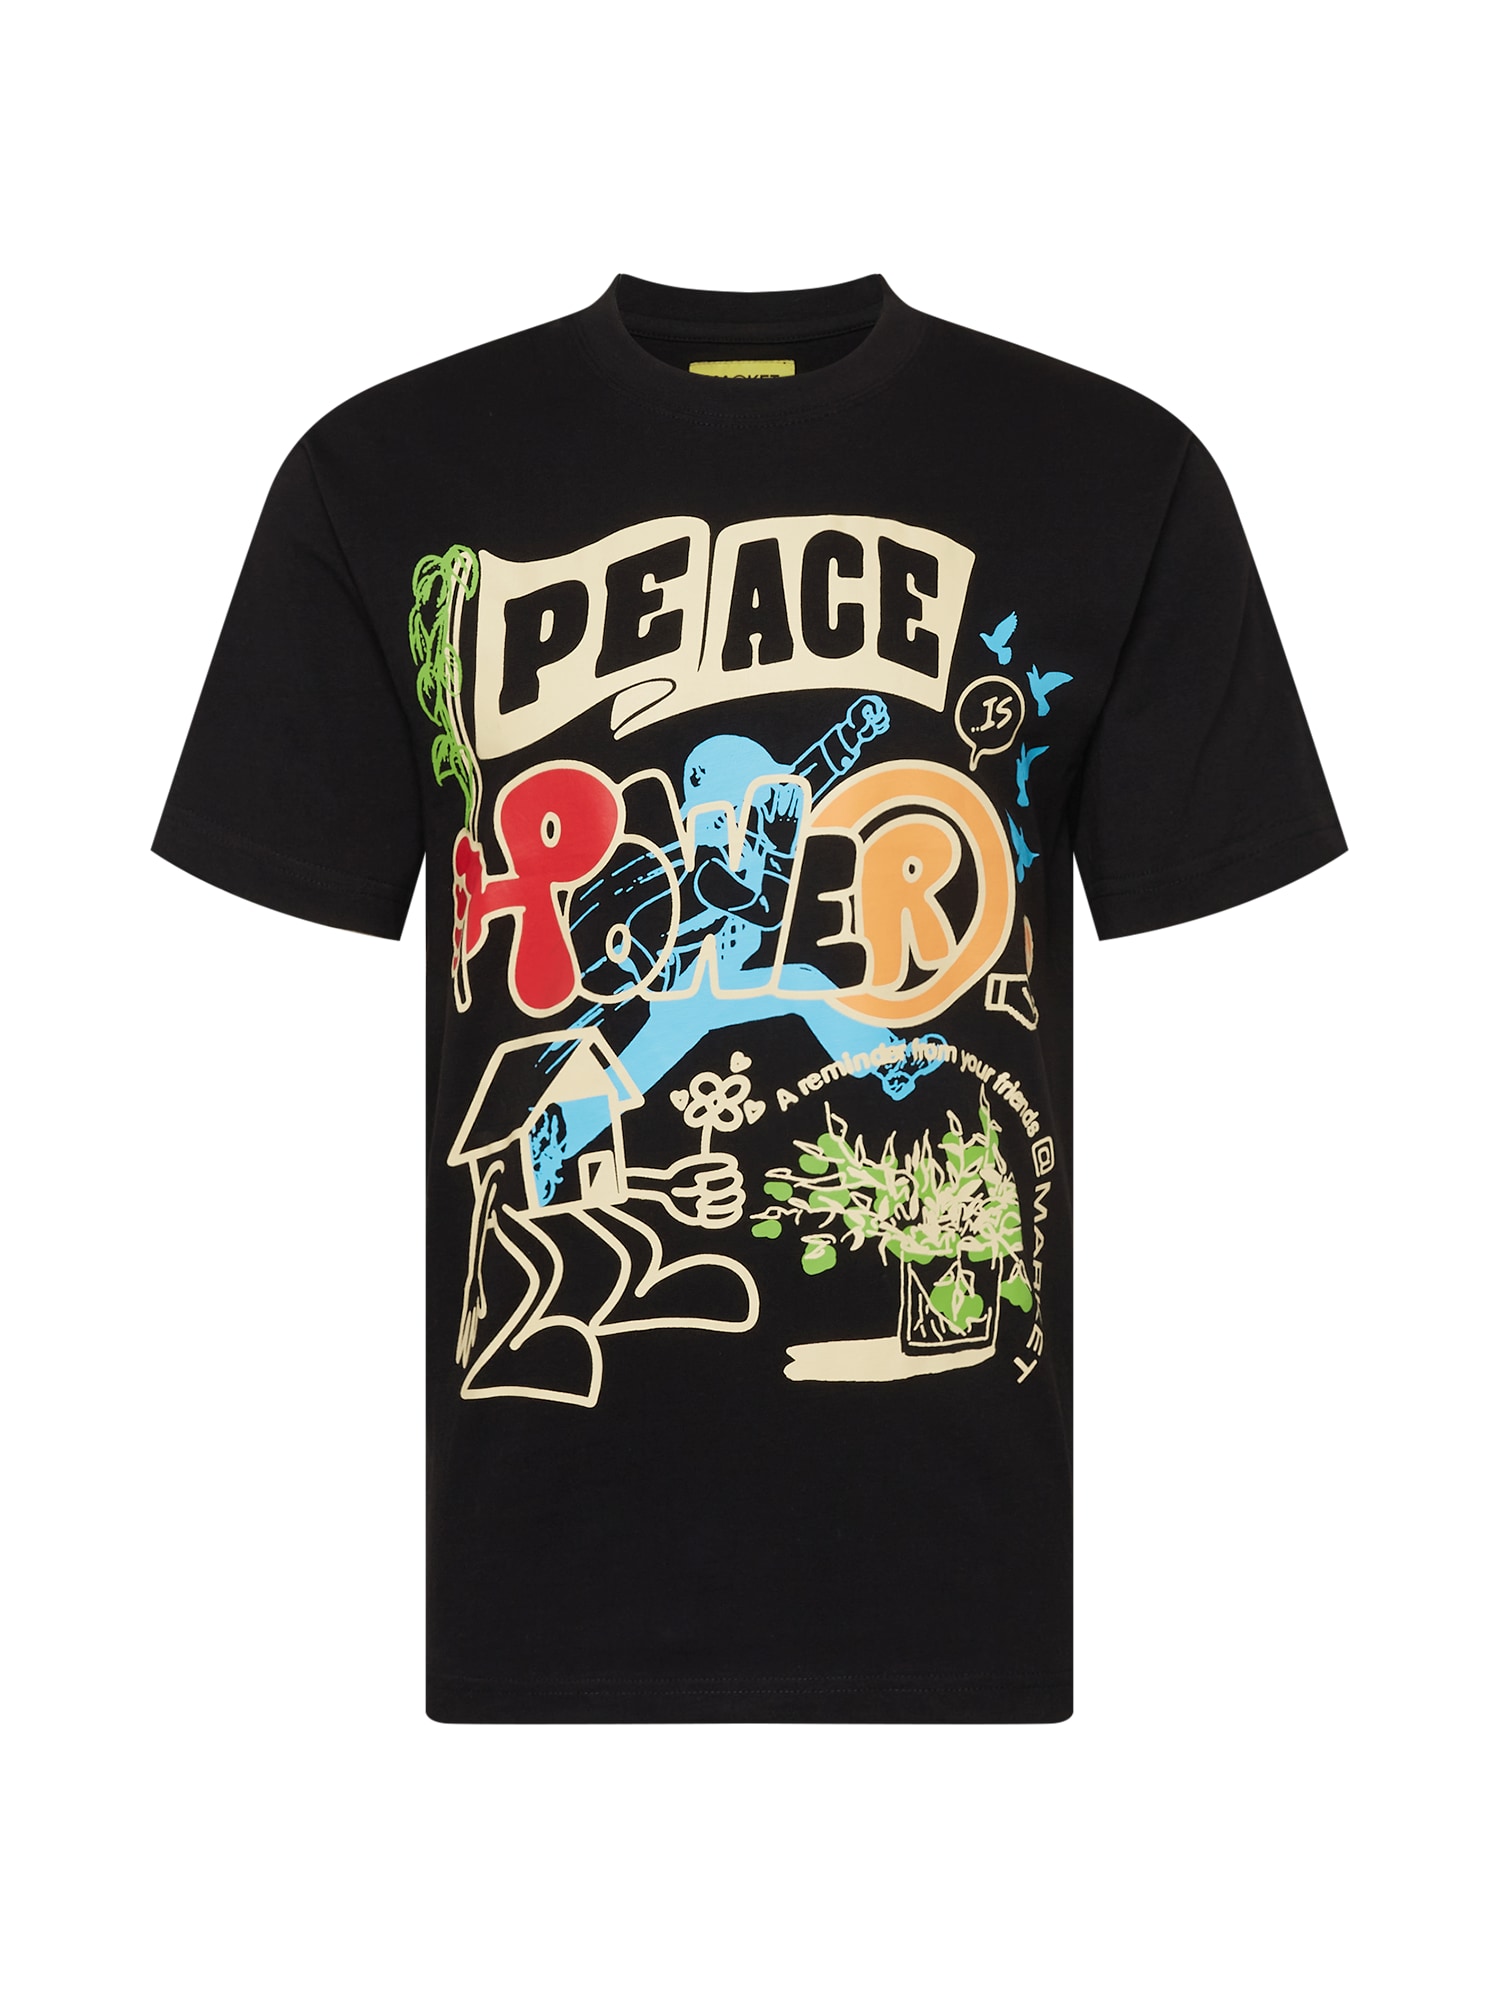 MARKET Marškinėliai 'PEACE AND POWER' juoda / mišrios spalvos